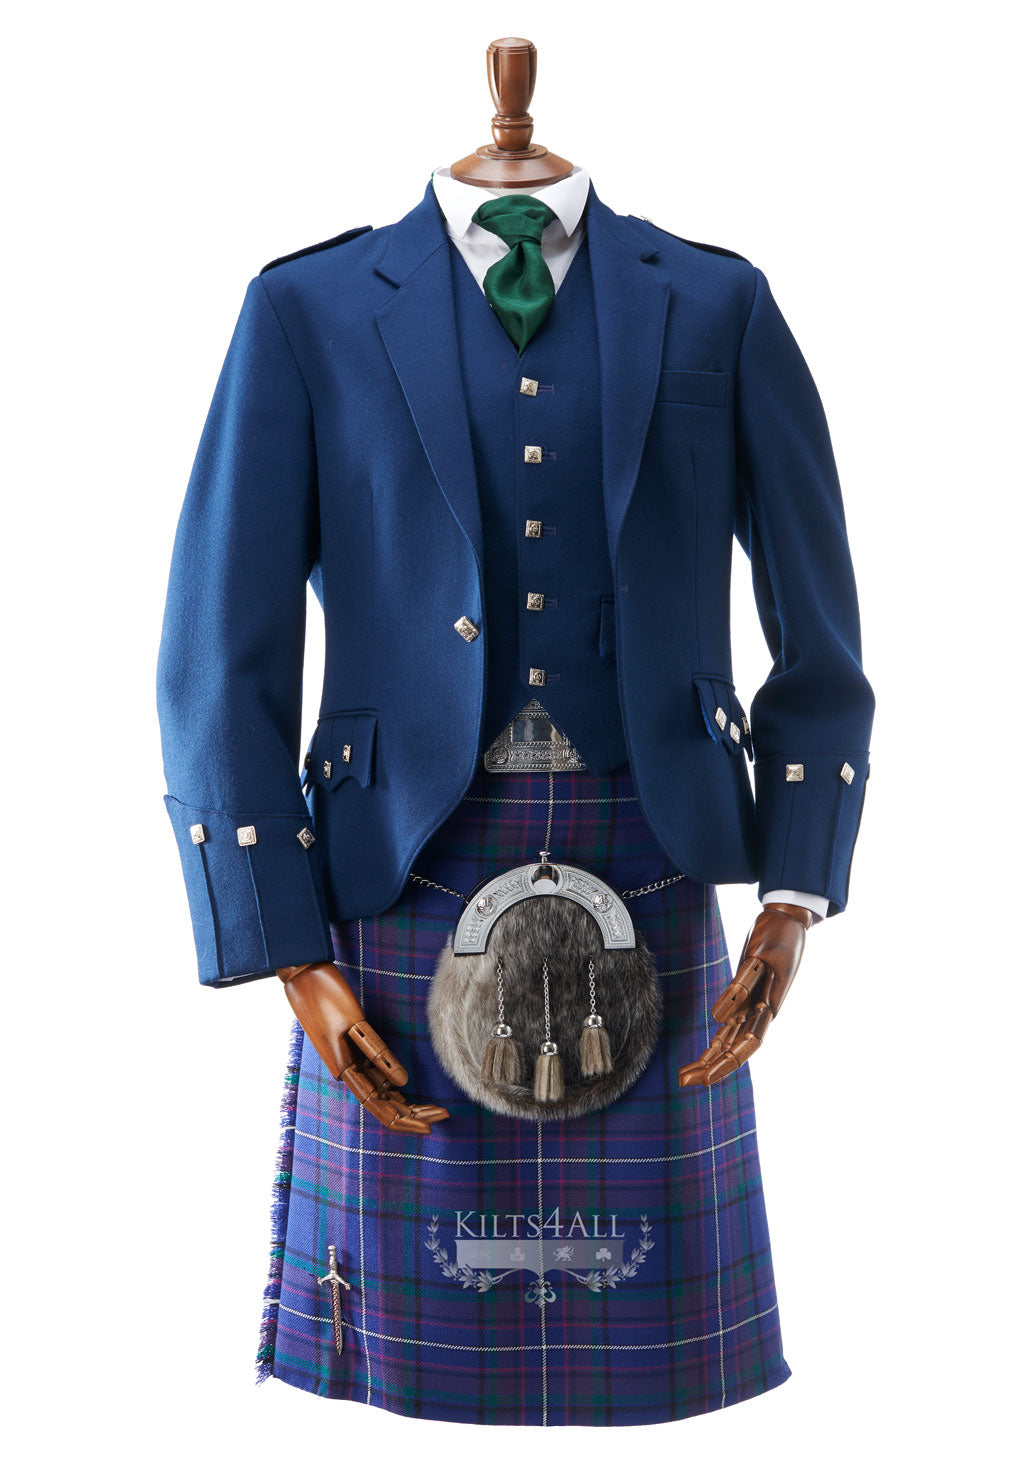 Mens Scottish Tartan Kilt Outfit to Hire - Contemporary Blue Argyll Jacket & Waistcoat